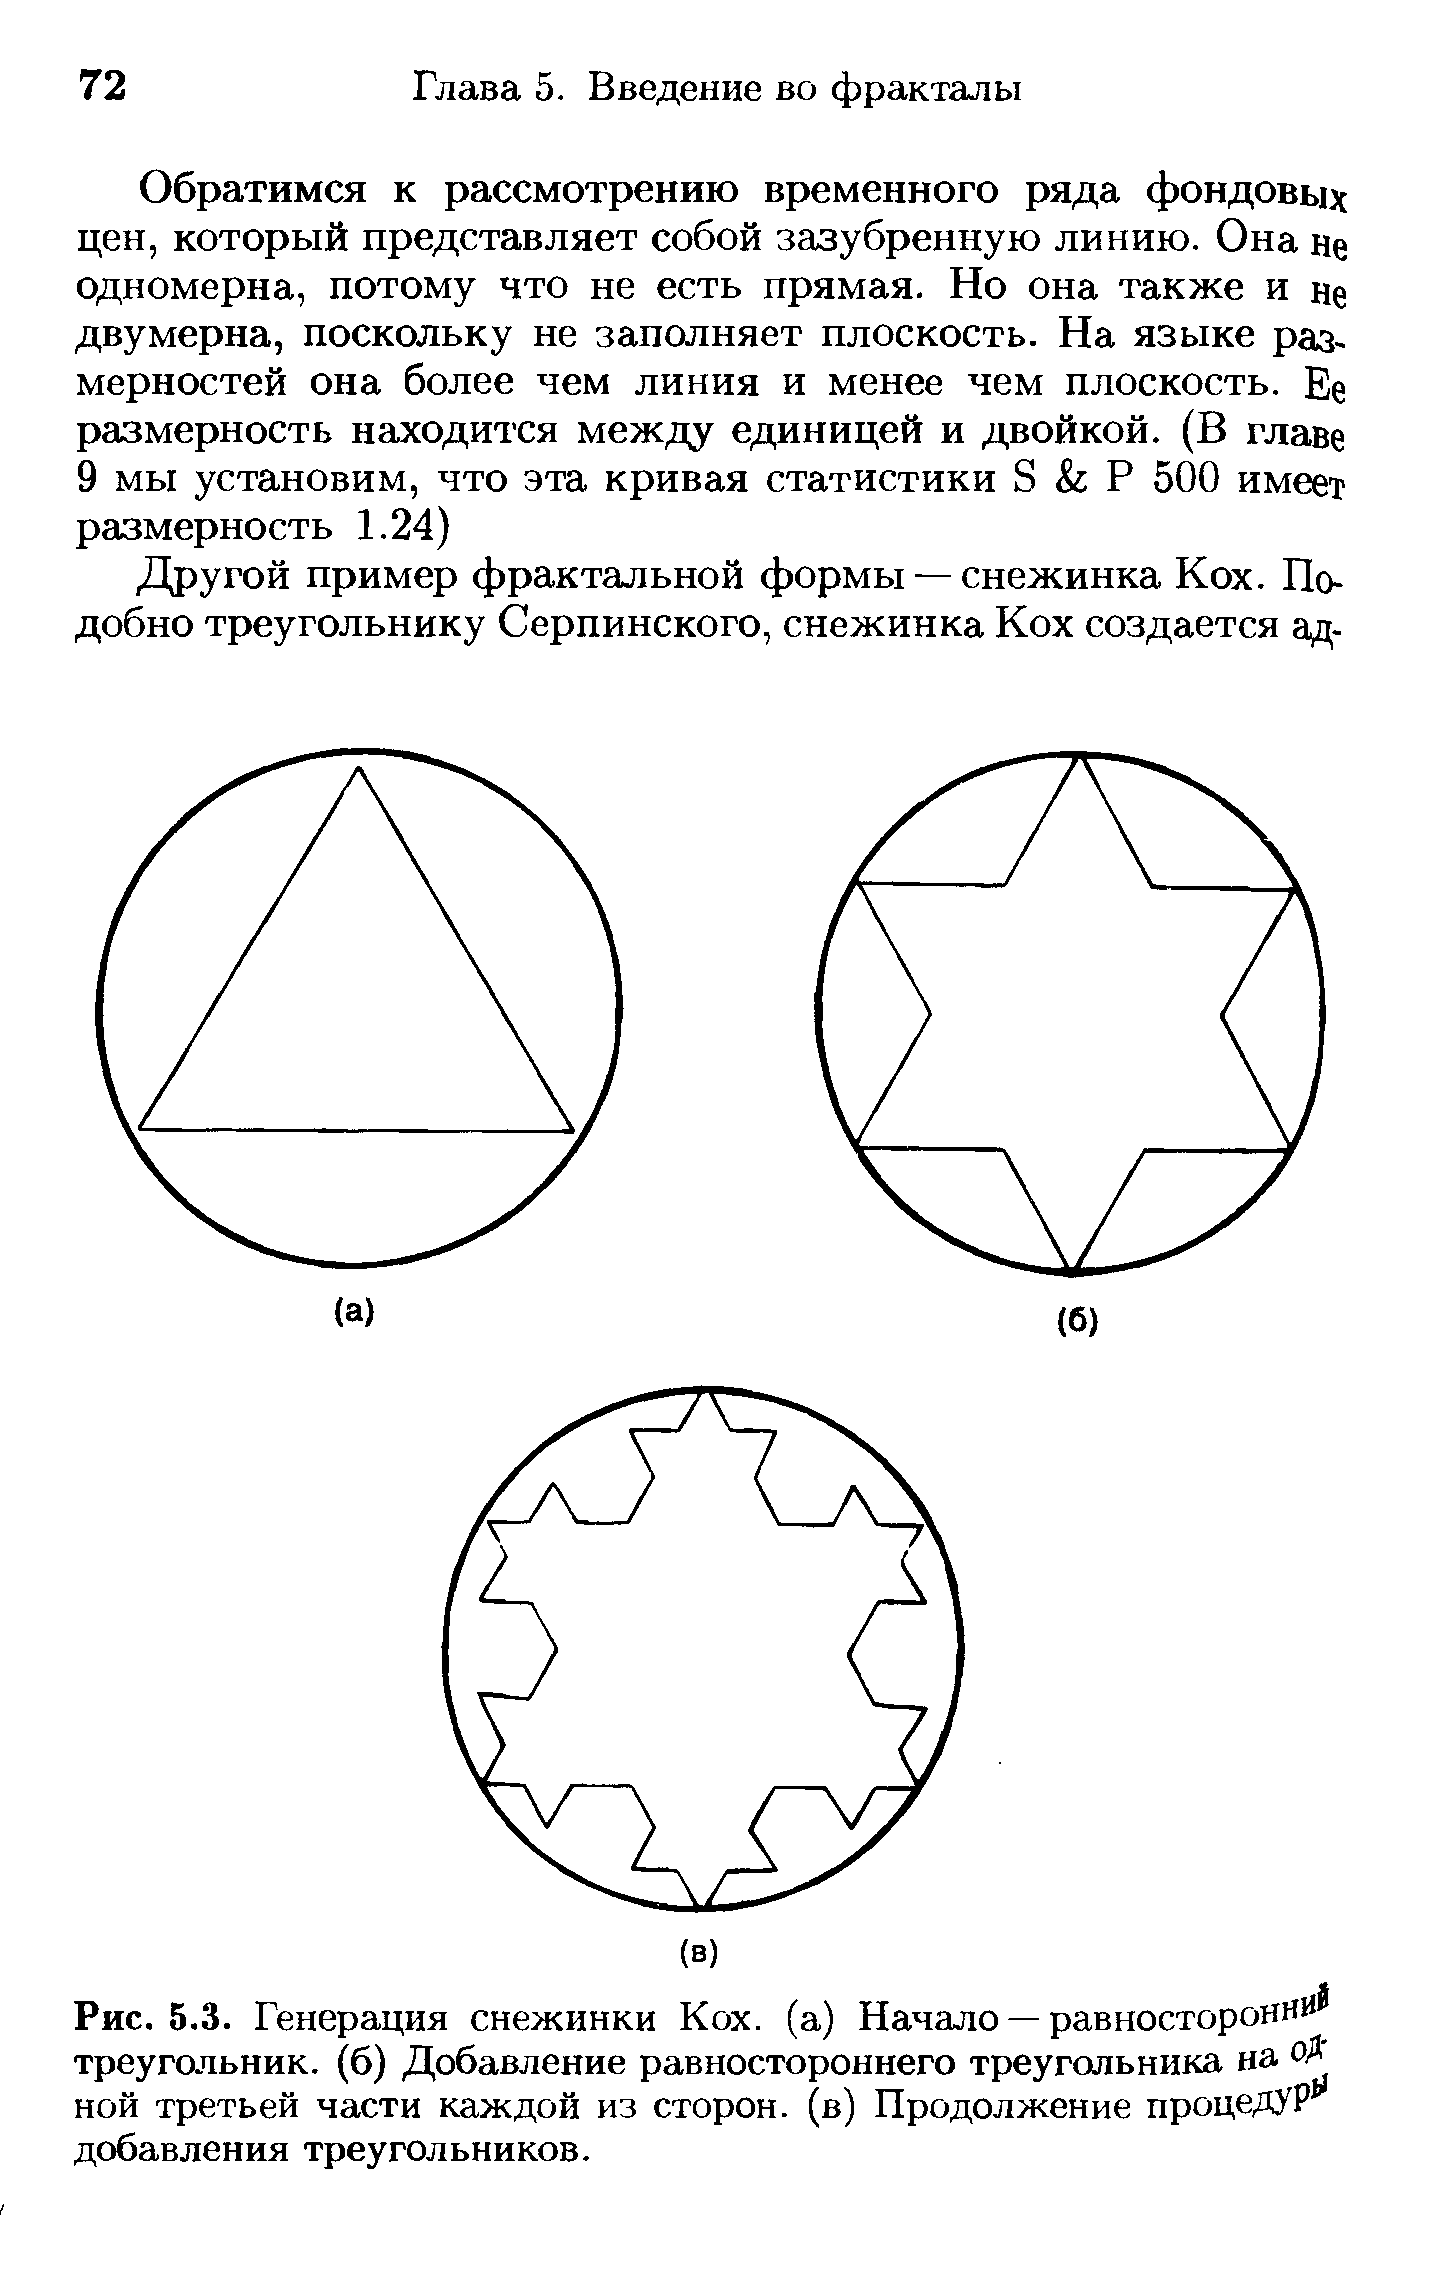 Рис. 5.3. Генерация снежинки Кох. (а) Начало — равностороннИ треугольник, (б) Добавление равностороннего треугольника на оД ной третьей части каждой из сторон, (в) Продолжение процедур добавления треугольников.
